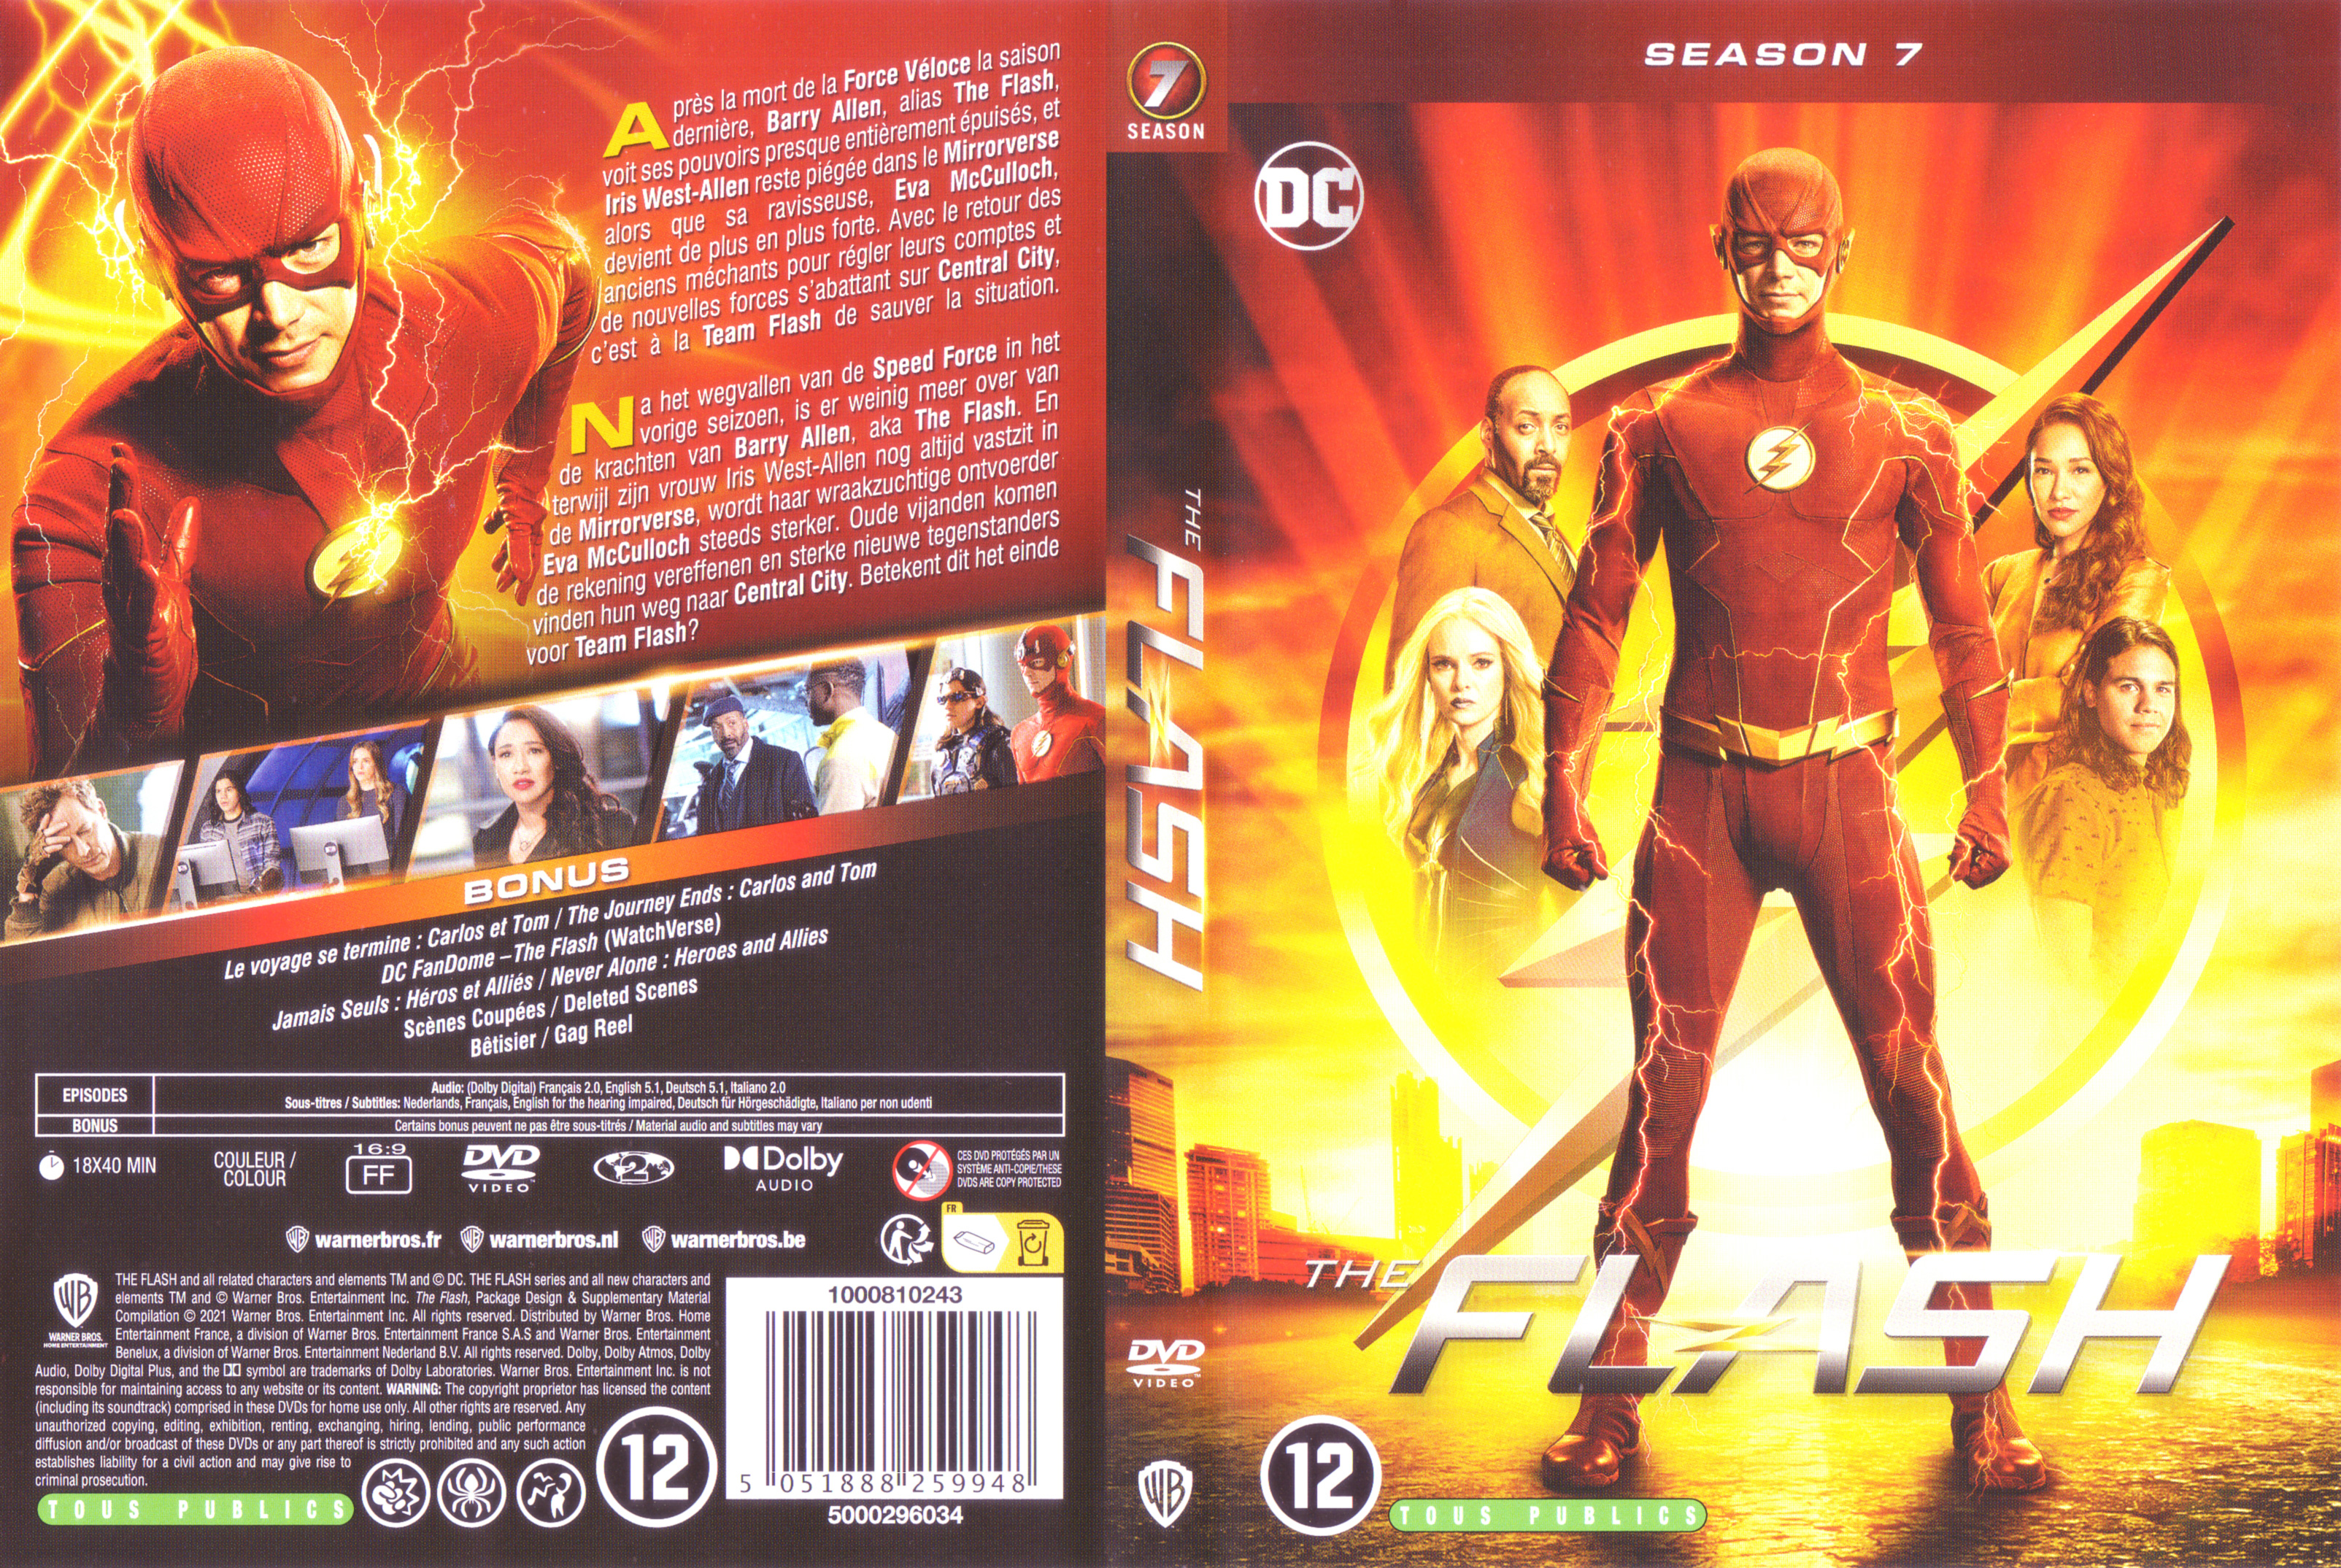 Jaquette DVD Flash Saison 7